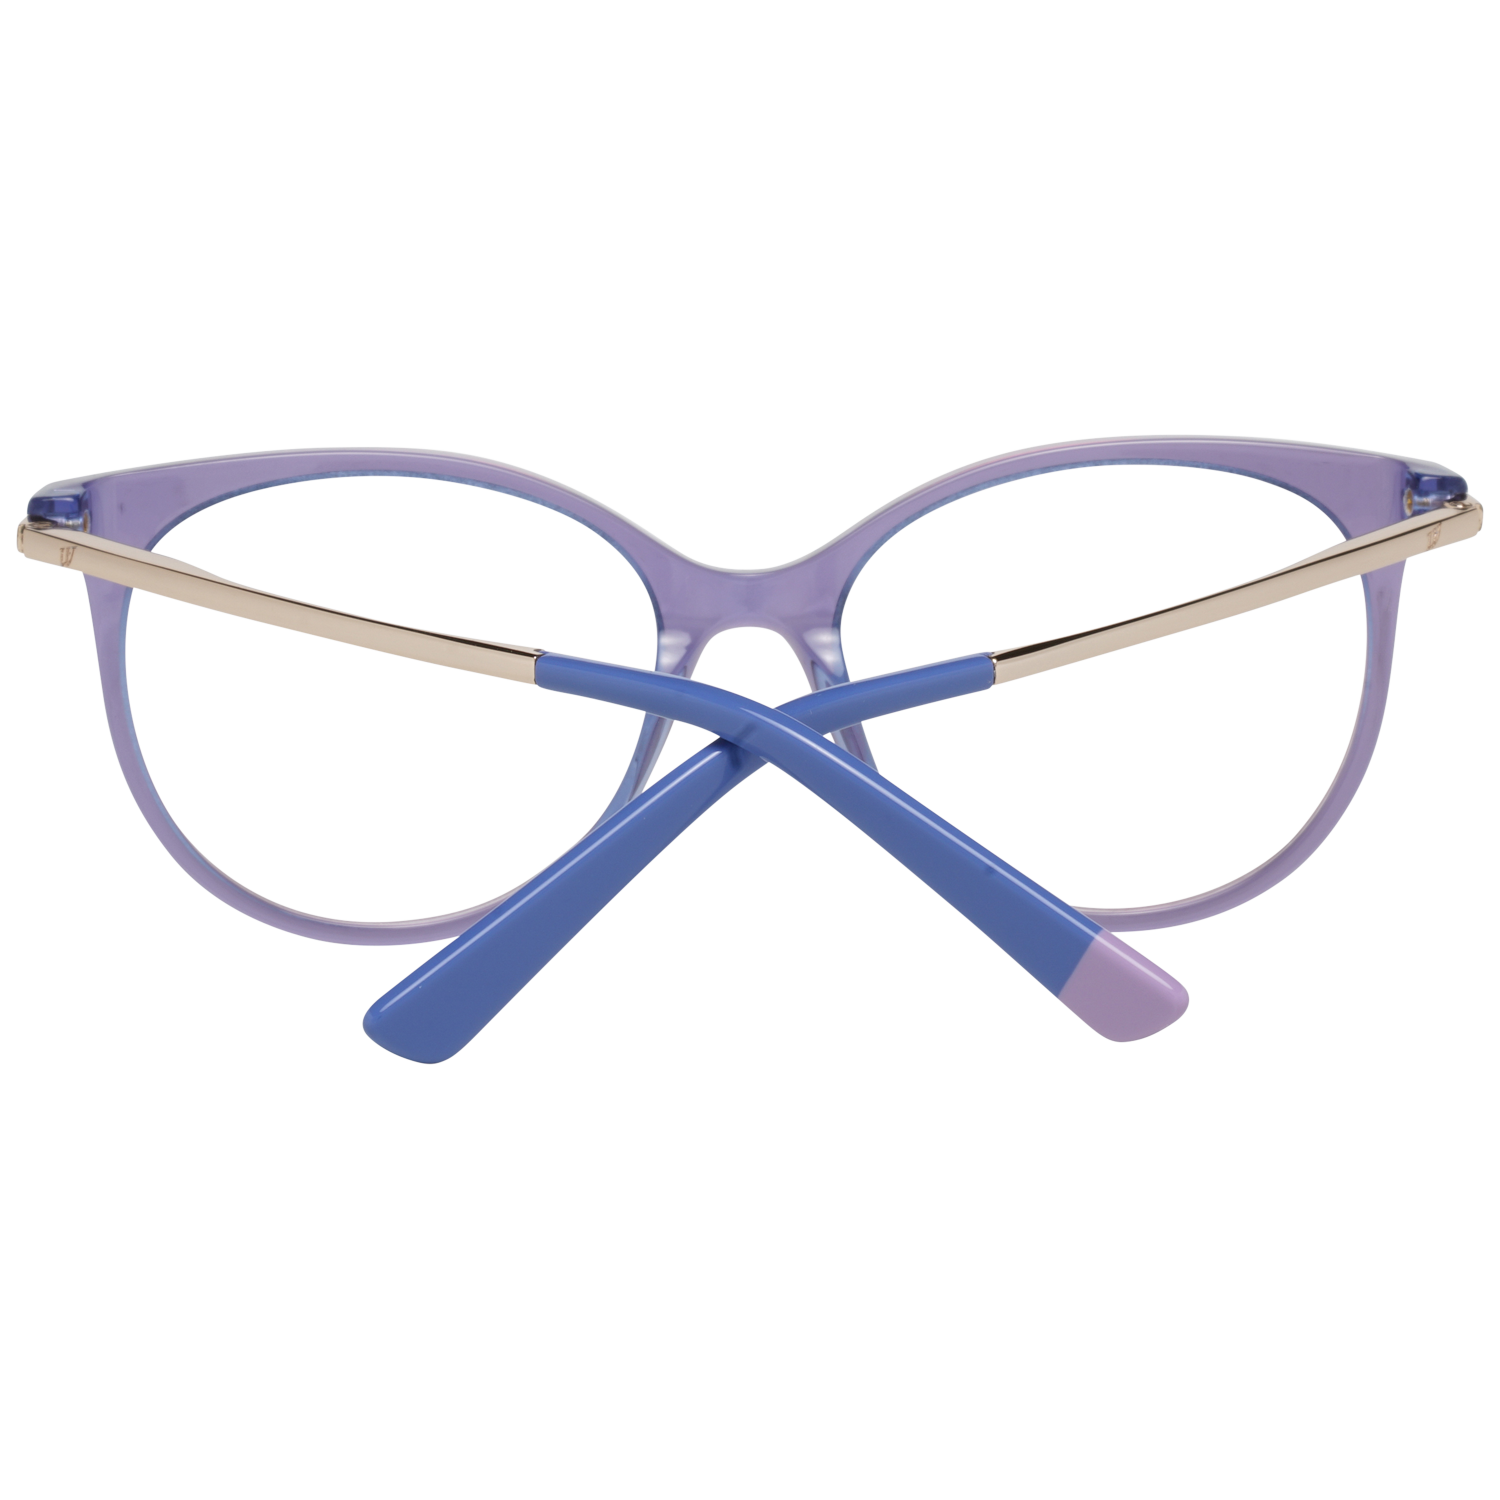 Web Frames Web Optical Frame WE5238 080 52 Eyeglasses Eyewear UK USA Australia 